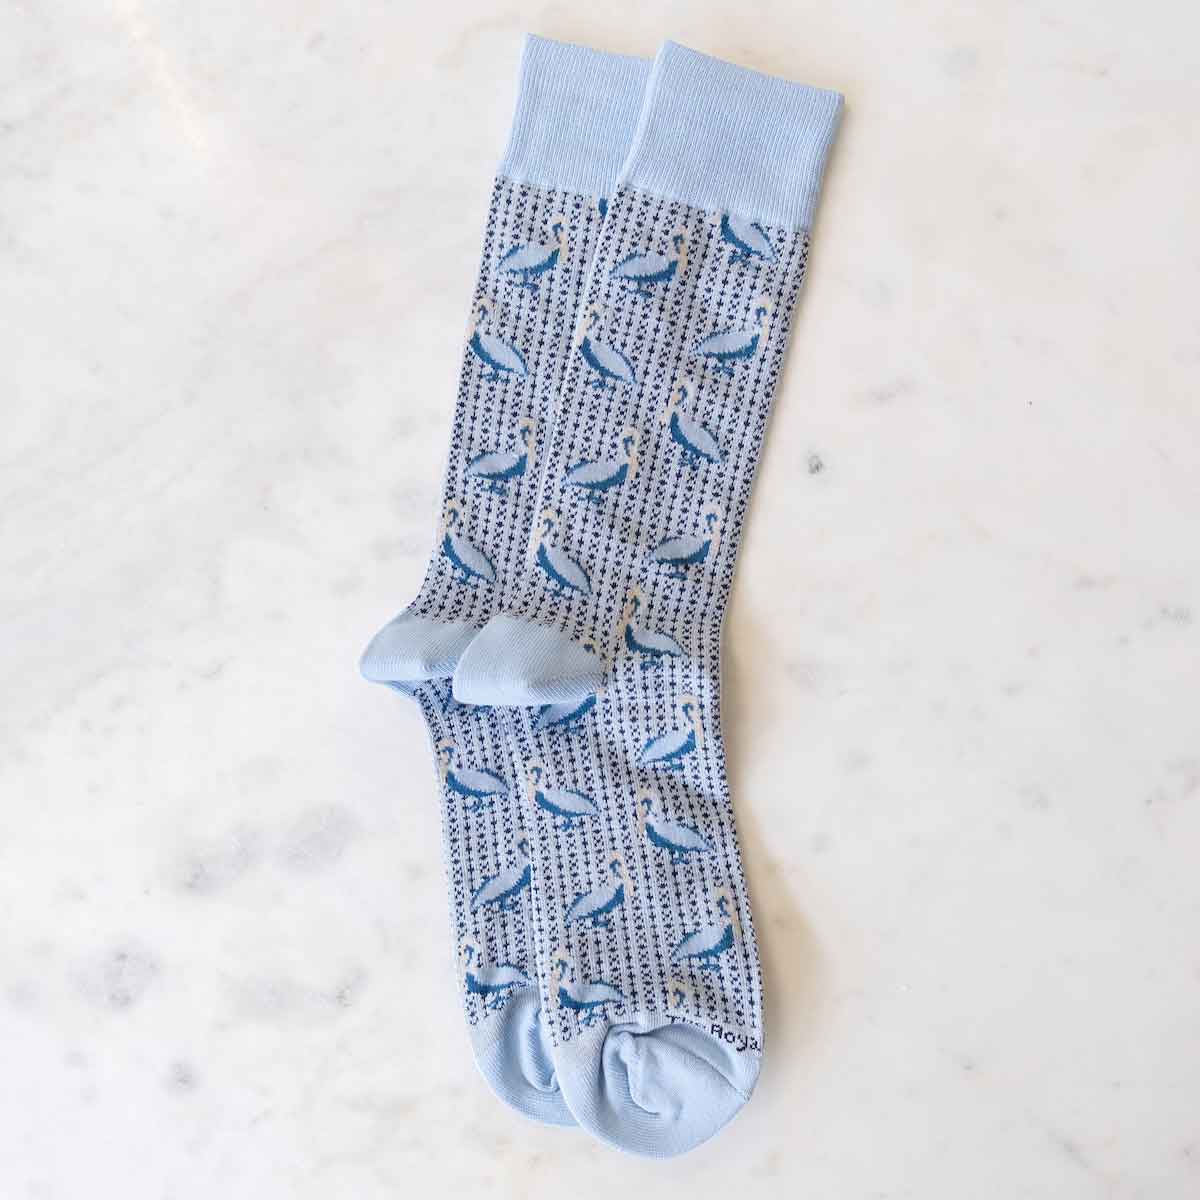 Men's Pelican Socks   Gray/Sky Blue   One Size